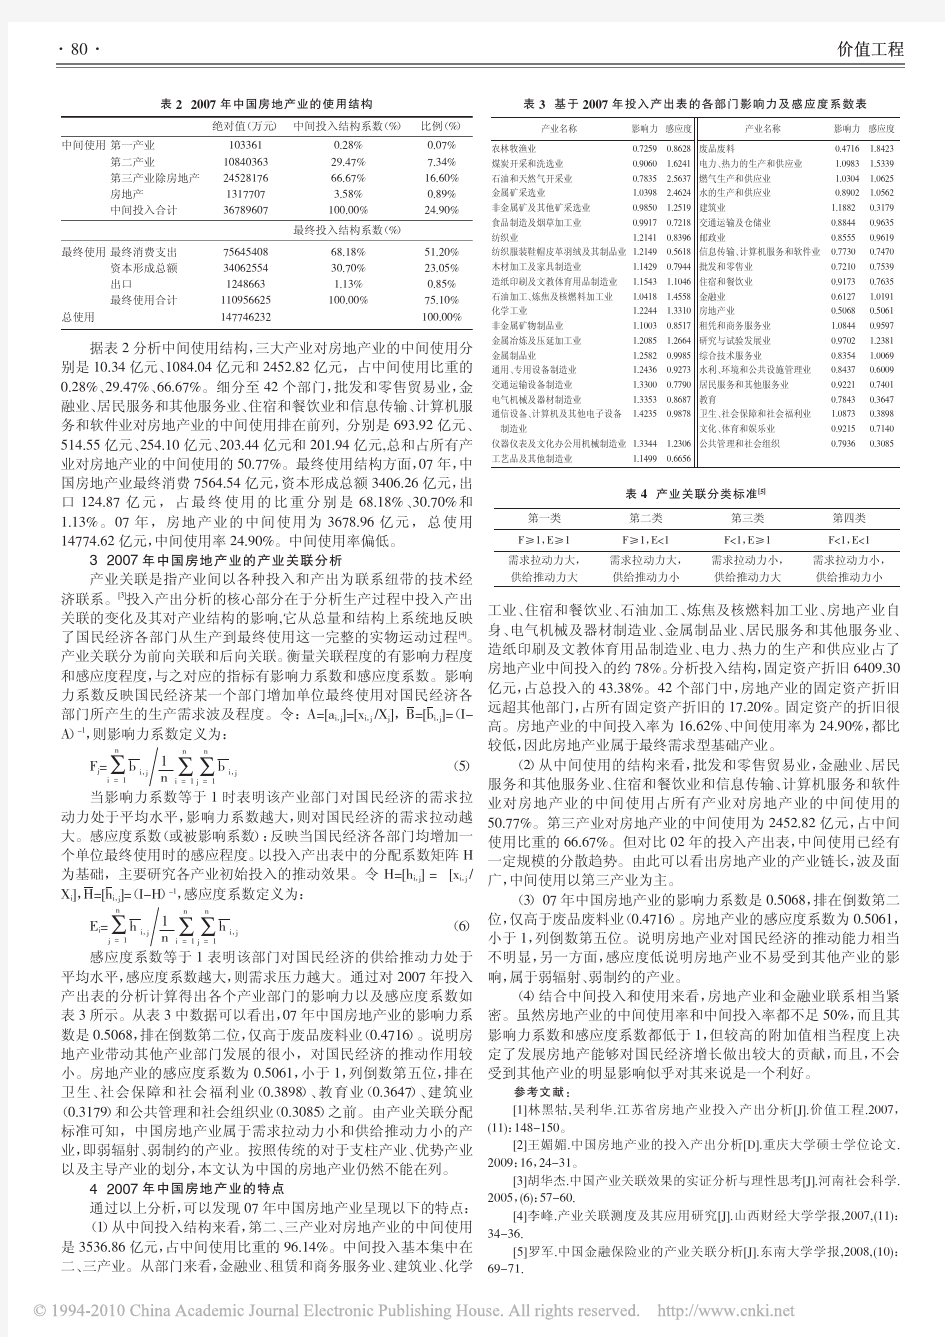 中国房地产业的投入产出分析_基于2007年投入产出表